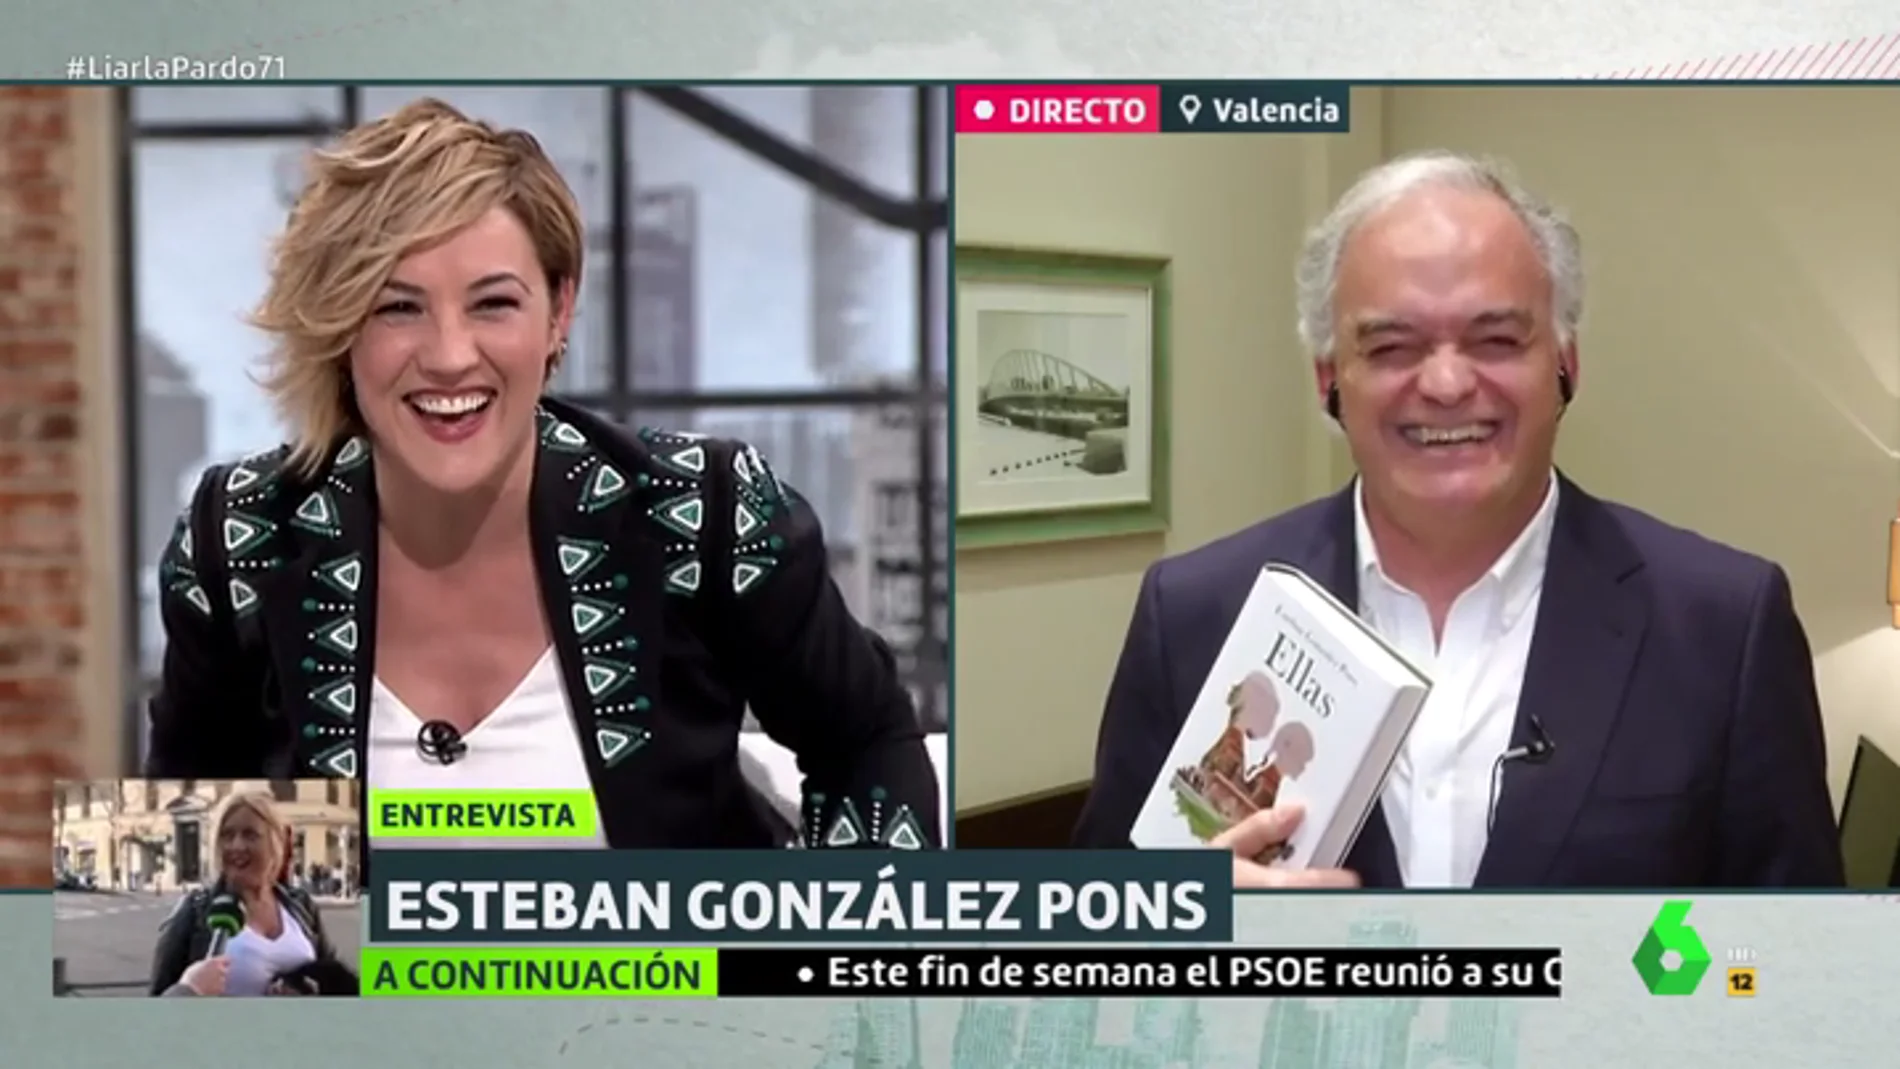 El divertido momento de Cristina Pardo y González Pons sincerándose sobre el primer amor: "No me hizo ni caso"